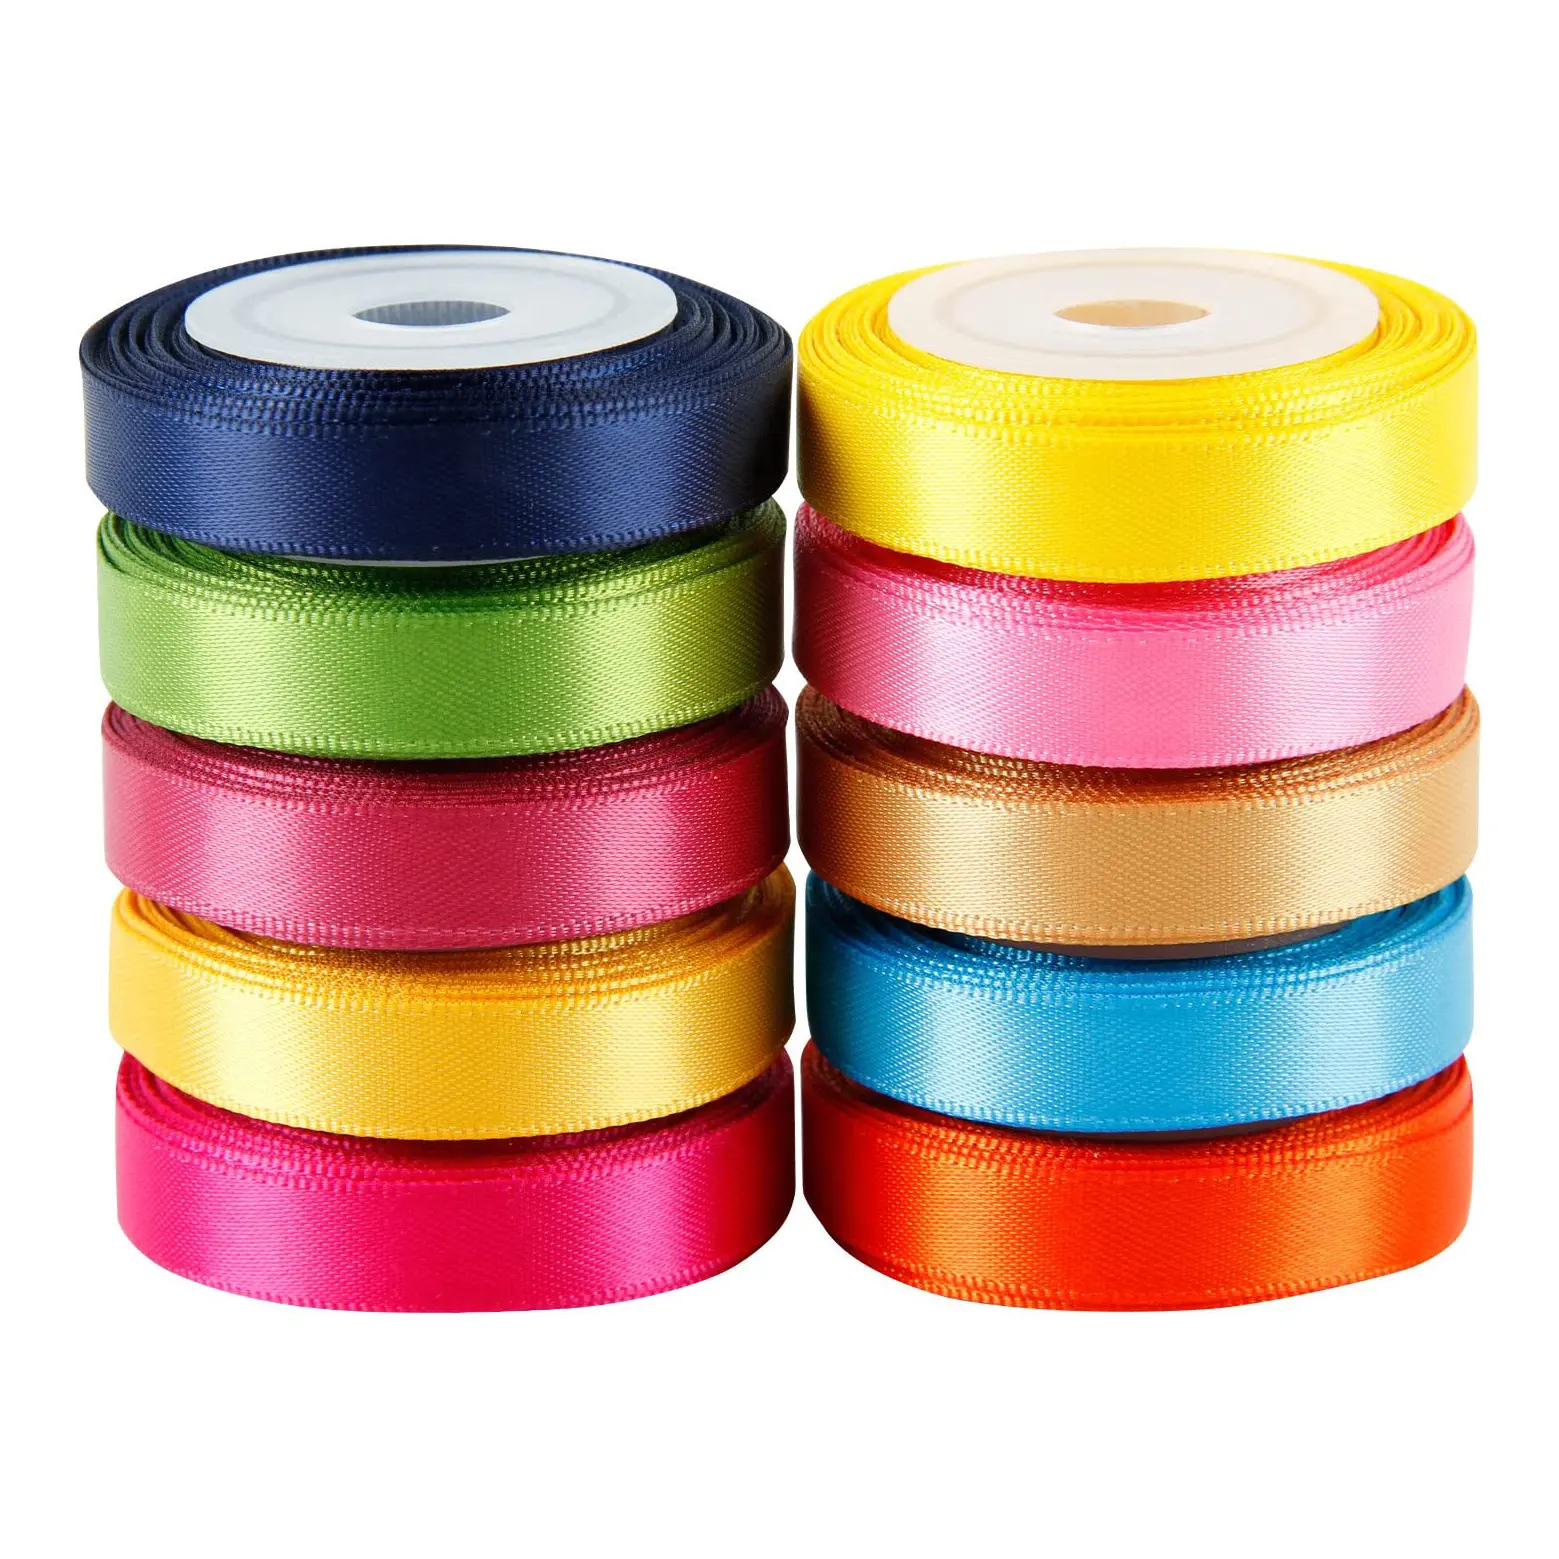 Rubans de couleur unie 100% Polyester, rubans de satin double face pour l'emballage de cadeaux, artisanat fait à la main